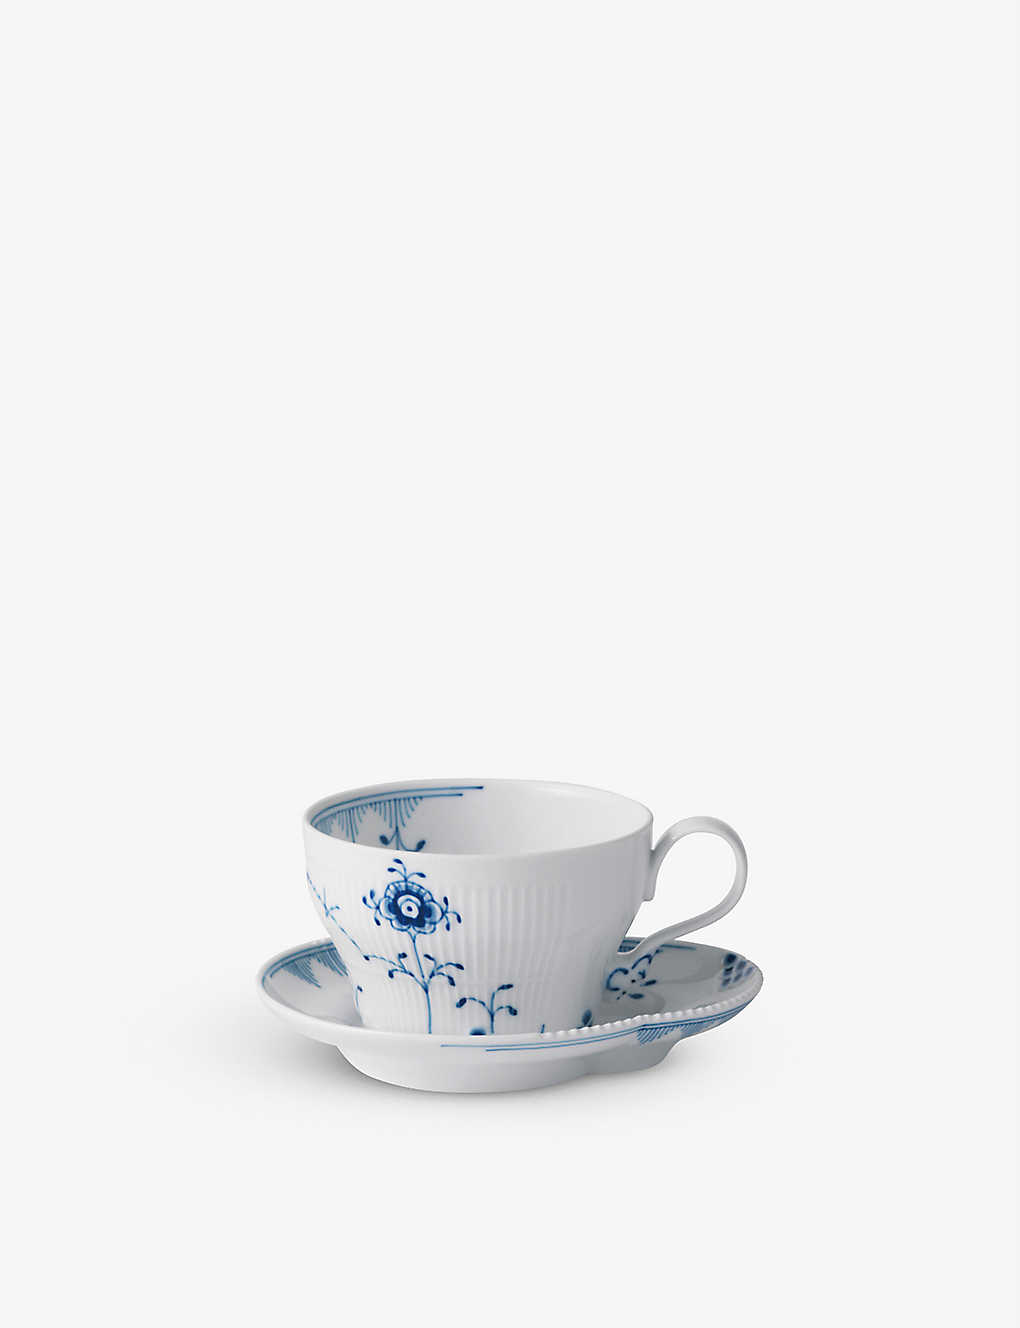 ロイヤルコペンハーゲン カップ ROYAL COPENHAGEN ブルーエレメンツ 器カップ&ソーサーセット 6.5cm Blue Elements porcelain cup and saucer set 6.5cm